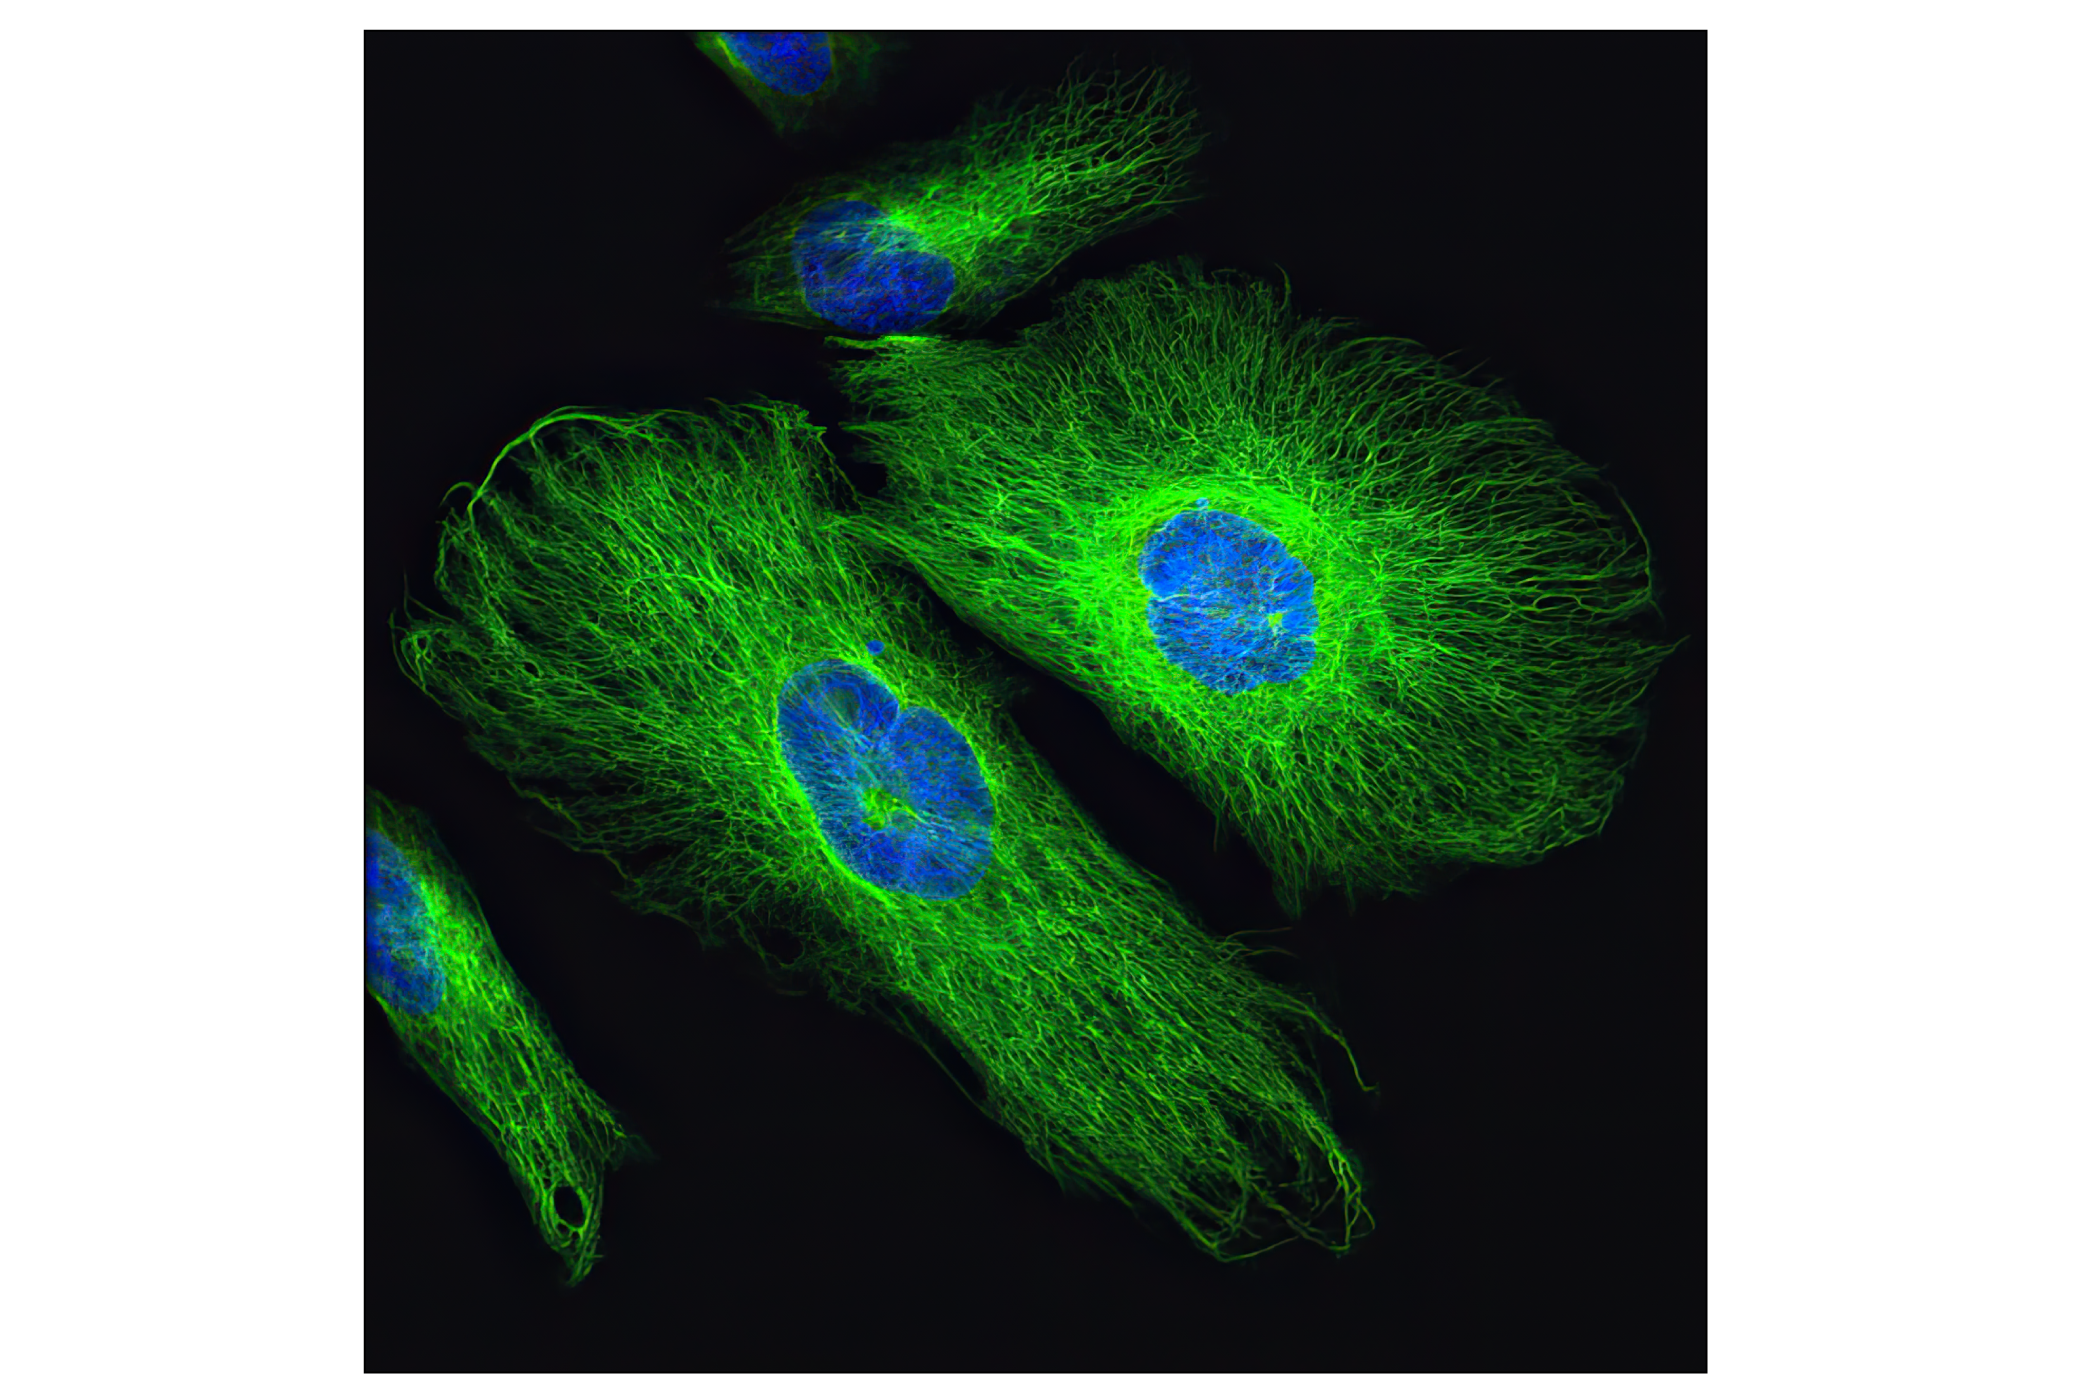  Image 40: Cell Fractionation Antibody Sampler Kit